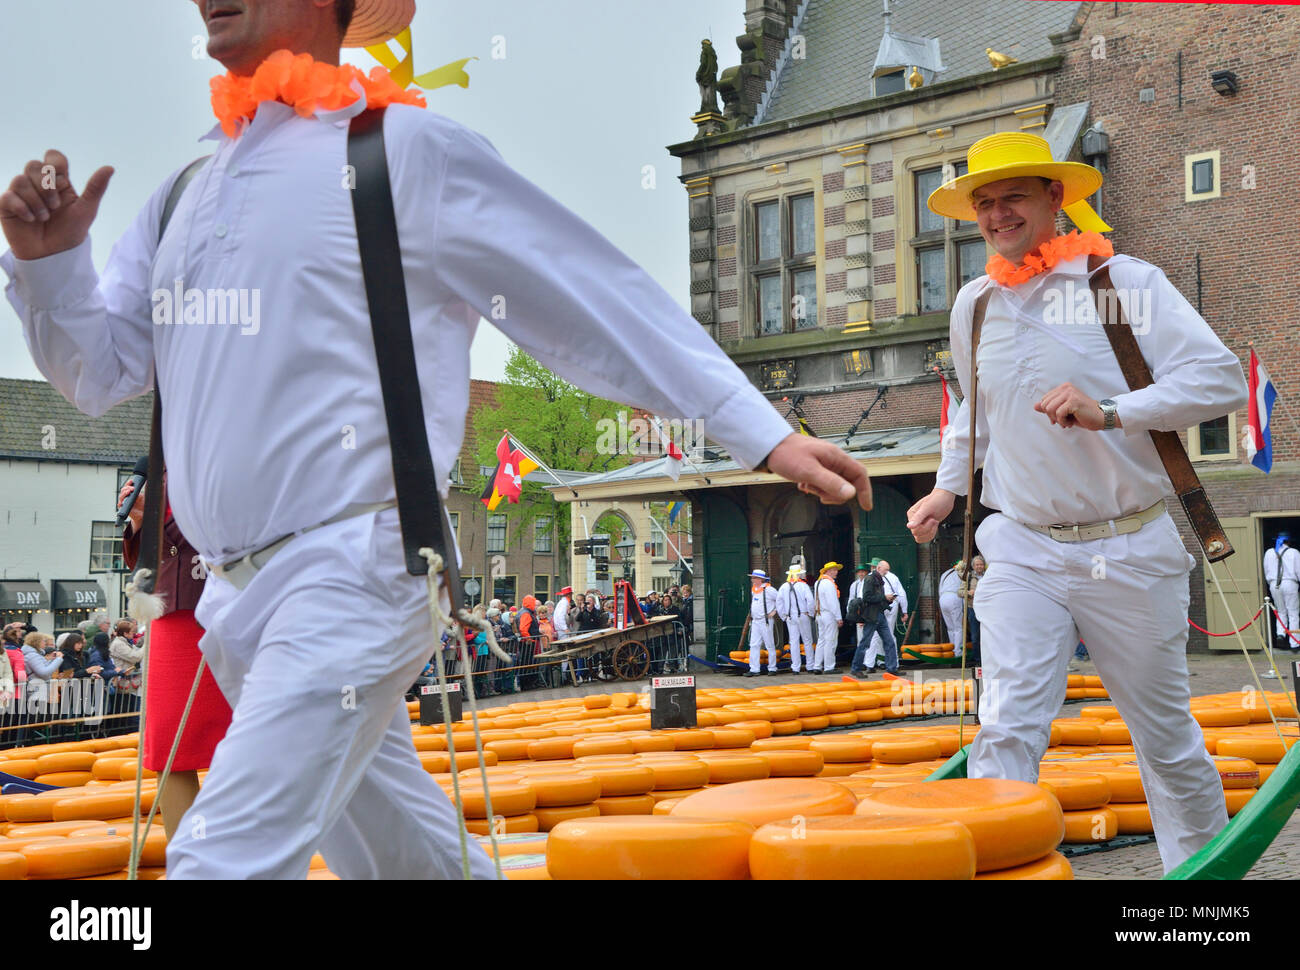 Il divertente mercato del formaggio avviene sul Waagplein in Alkmaar, Holland ogni settimana durante la primavera e l'estate. Foto Stock